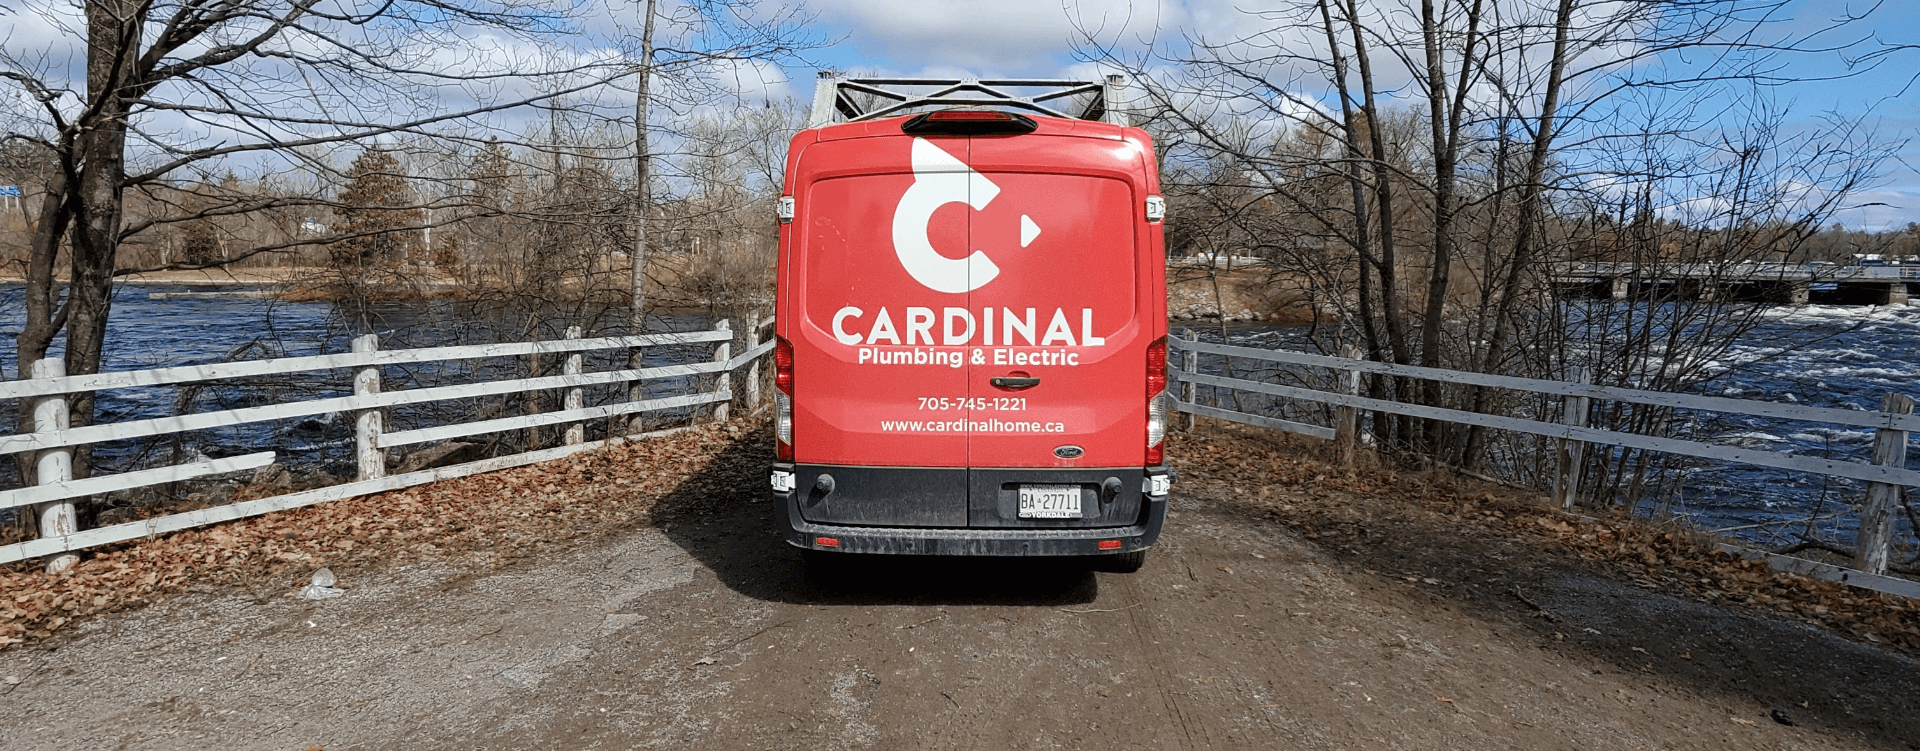 Cardinal Plumbing Electric Van